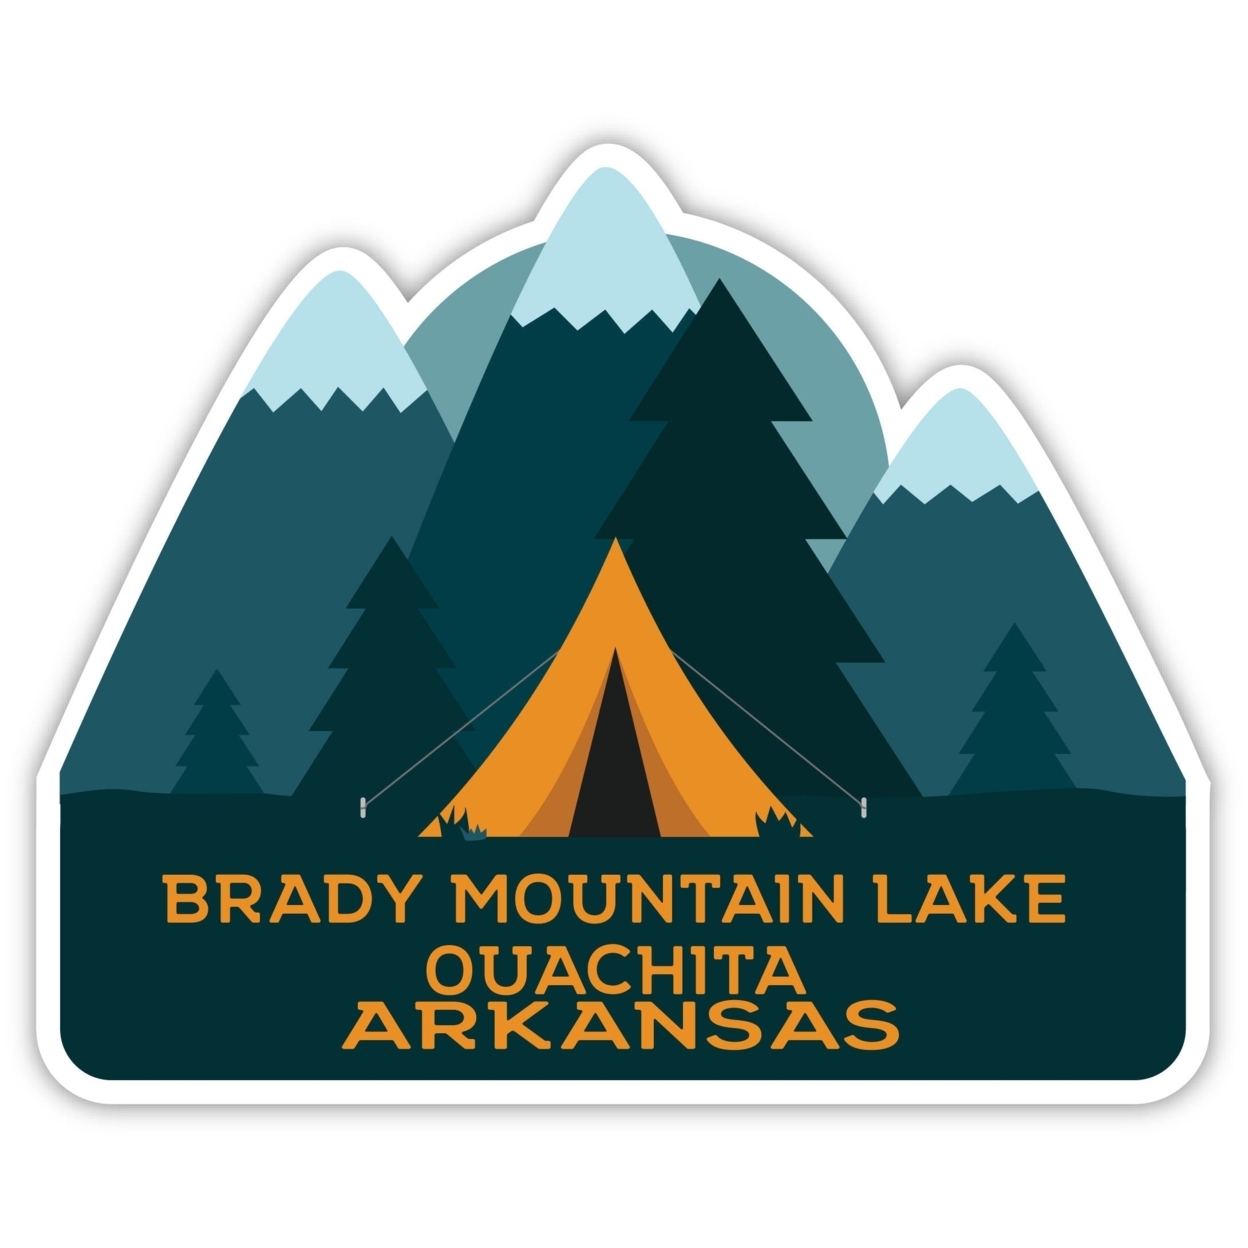 Brady Mountain Lake Ouachita Arkansas Souvenir Decorative Stickers (Choose Theme And Size) - 4-Pack, 4-Inch, Bear